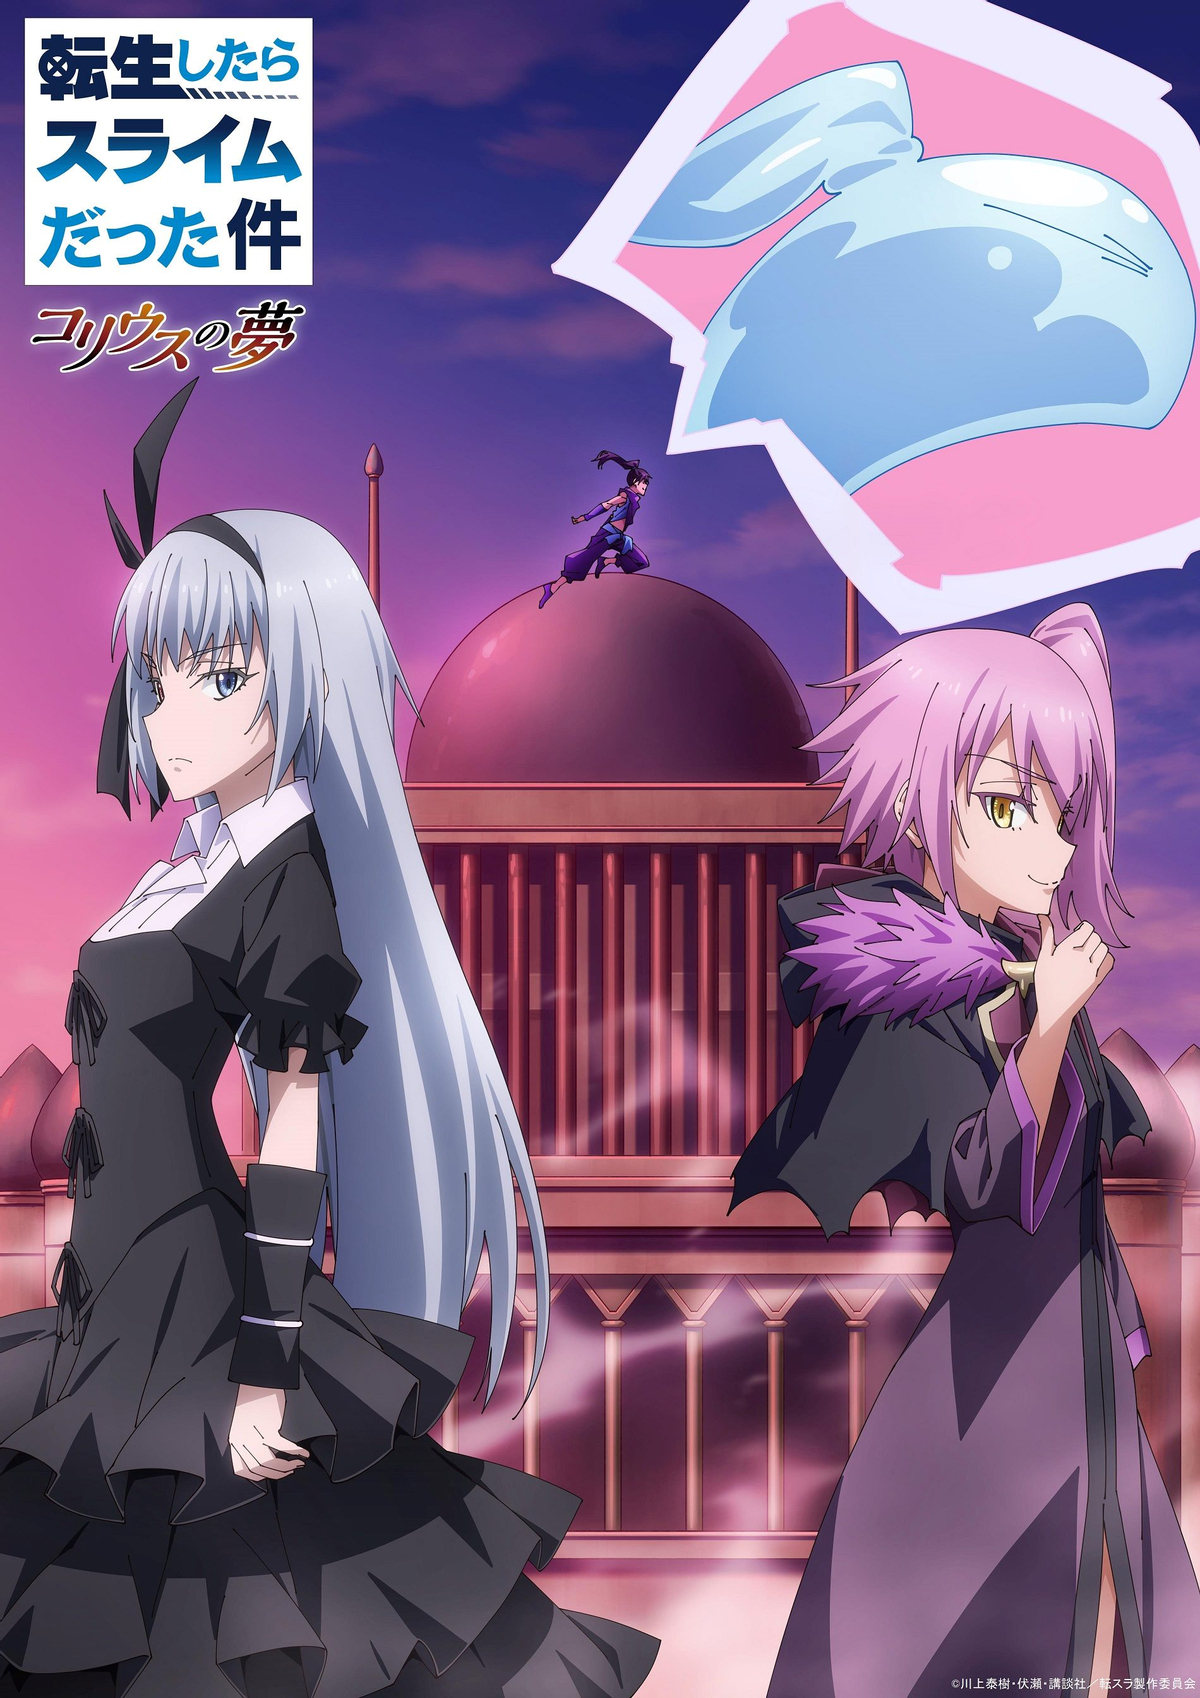 Постер OVA «О моем перерождении в слизь: Мечта Колея» с вампиршей Люминус и демоницей Вайолет